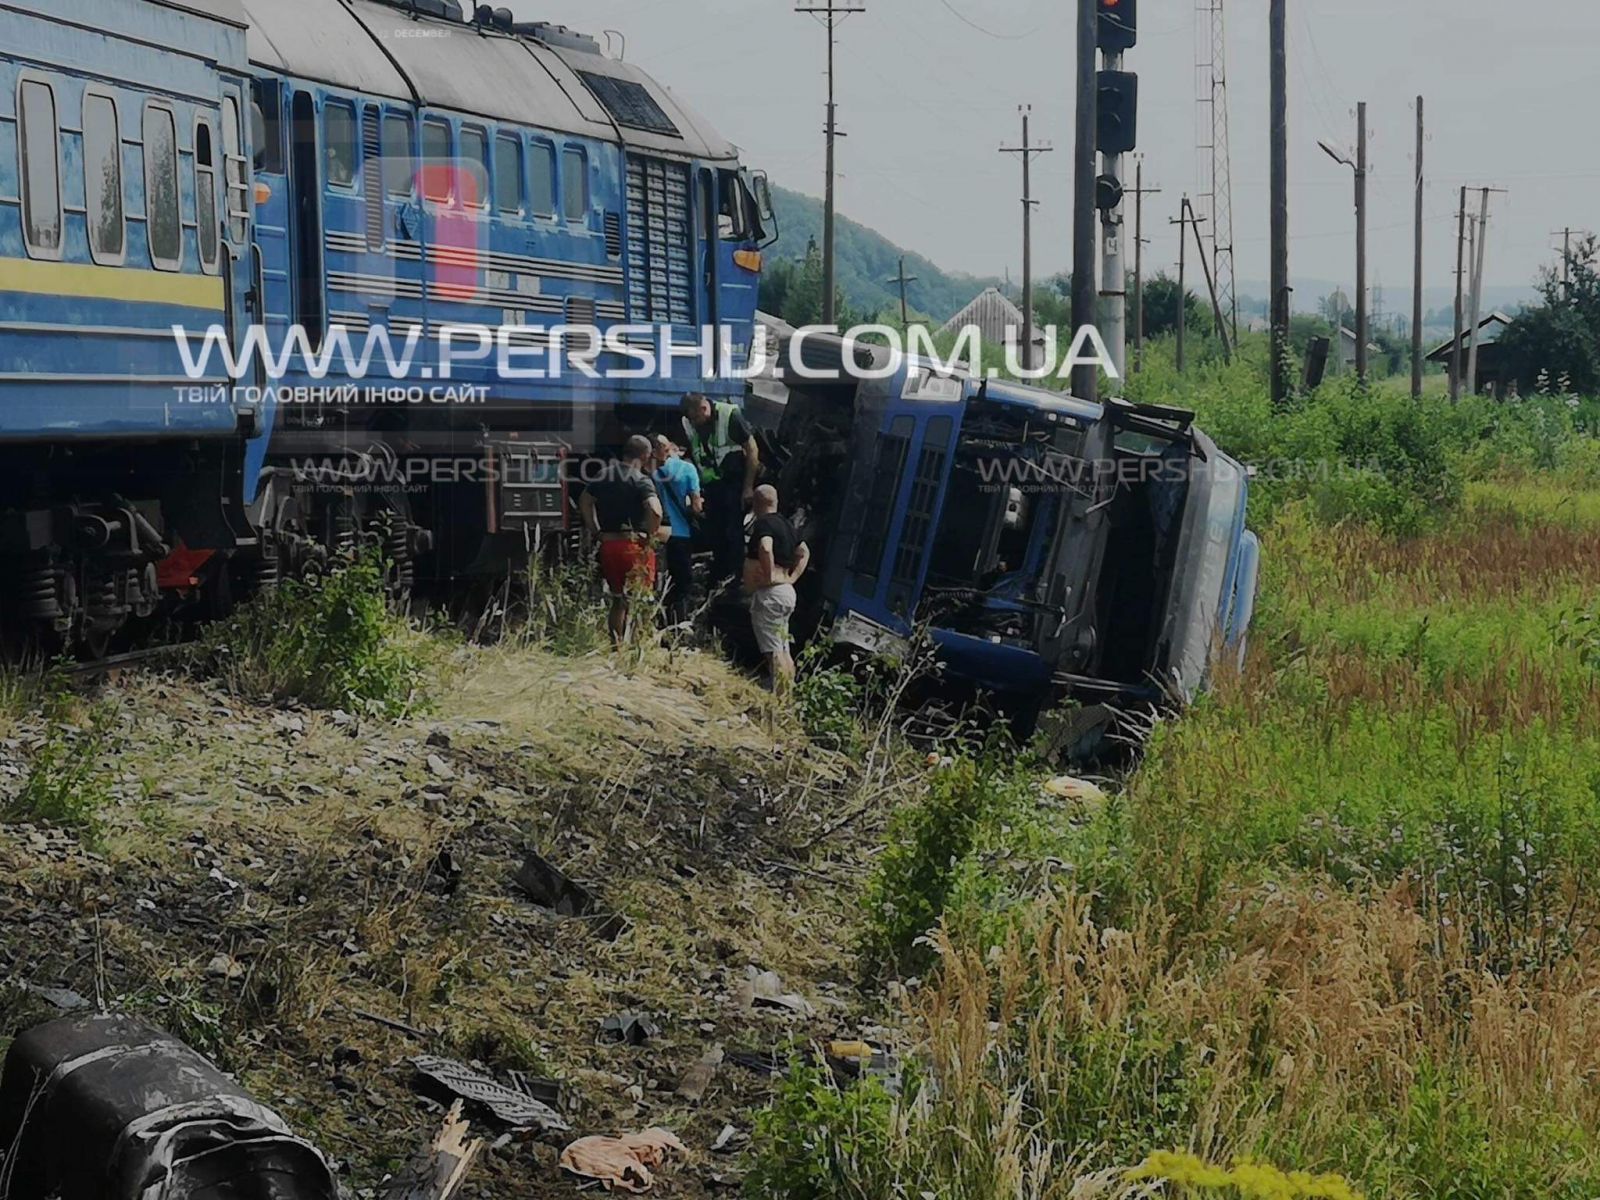 З‘явилися світлини з місця аварії у Рокосові за участі пасажирського потягу та вантажівки (ФОТО)